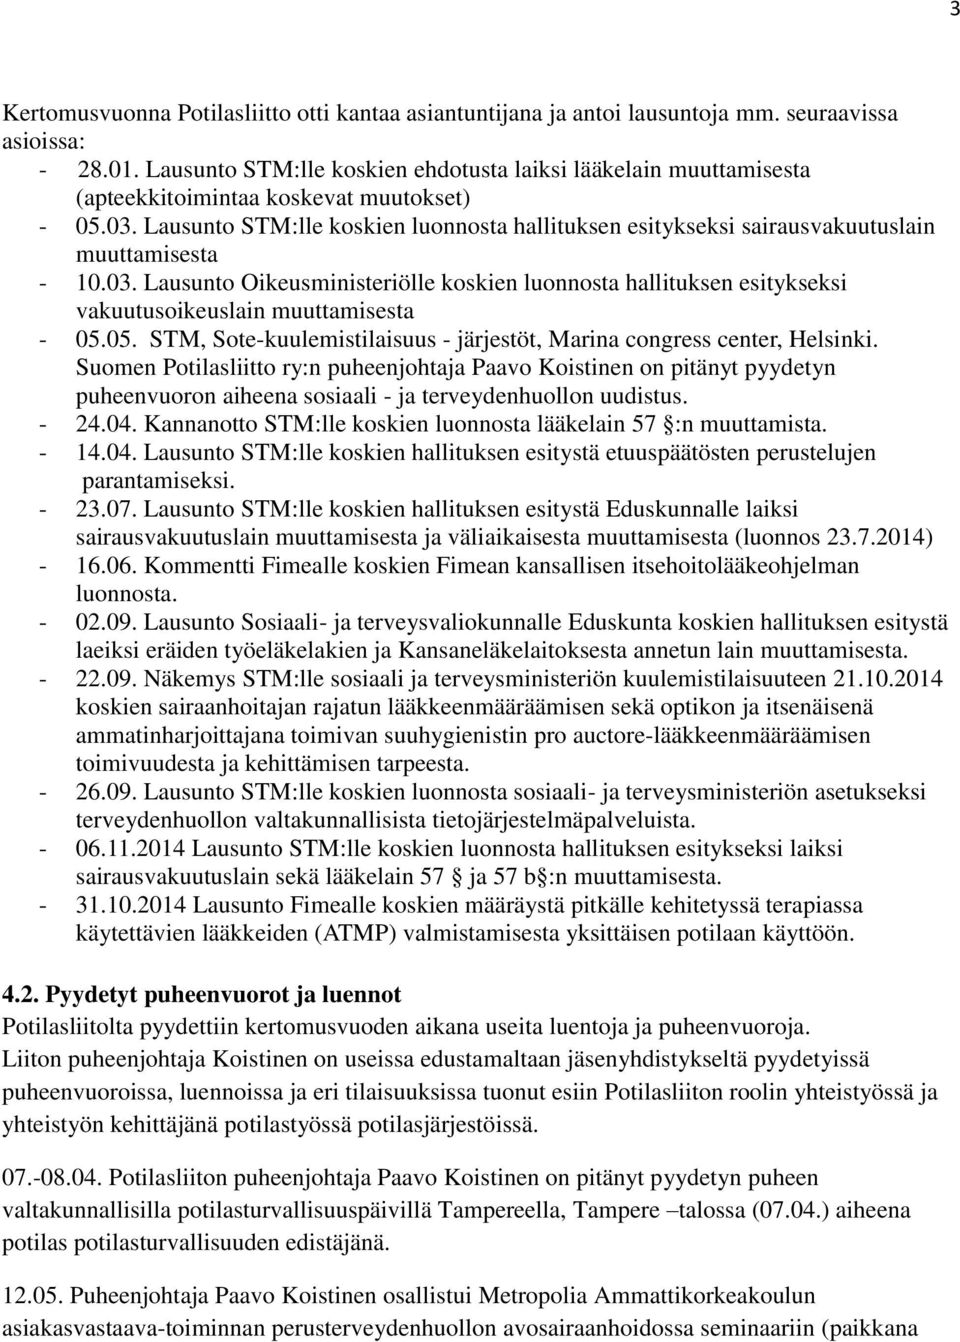 Lausunto STM:lle koskien luonnosta hallituksen esitykseksi sairausvakuutuslain muuttamisesta - 10.03.